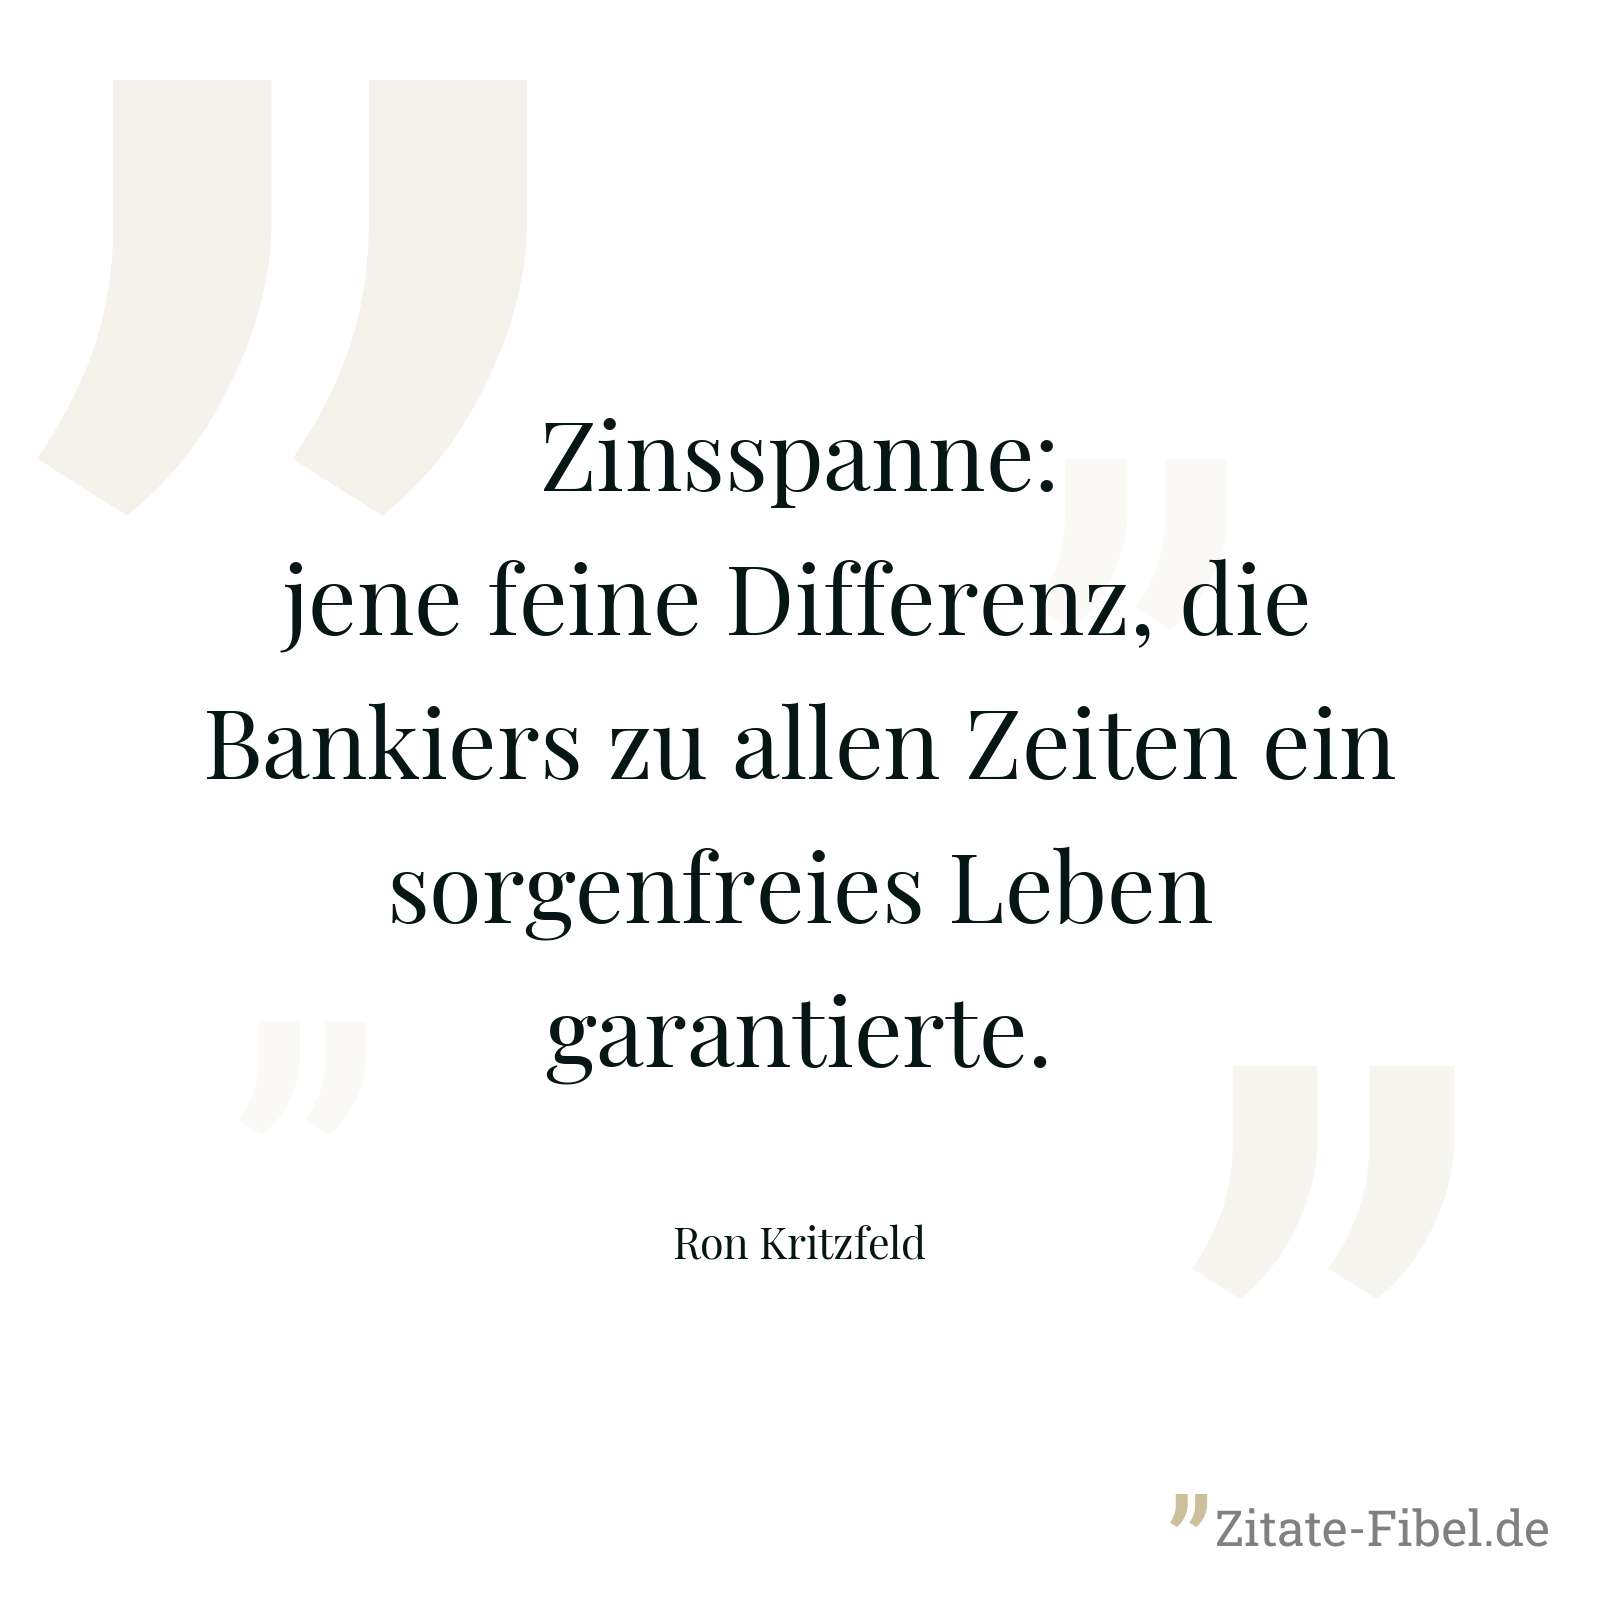 Zinsspanne: jene feine Differenz, die Bankiers zu allen Zeiten ein sorgenfreies Leben garantierte. - Ron Kritzfeld